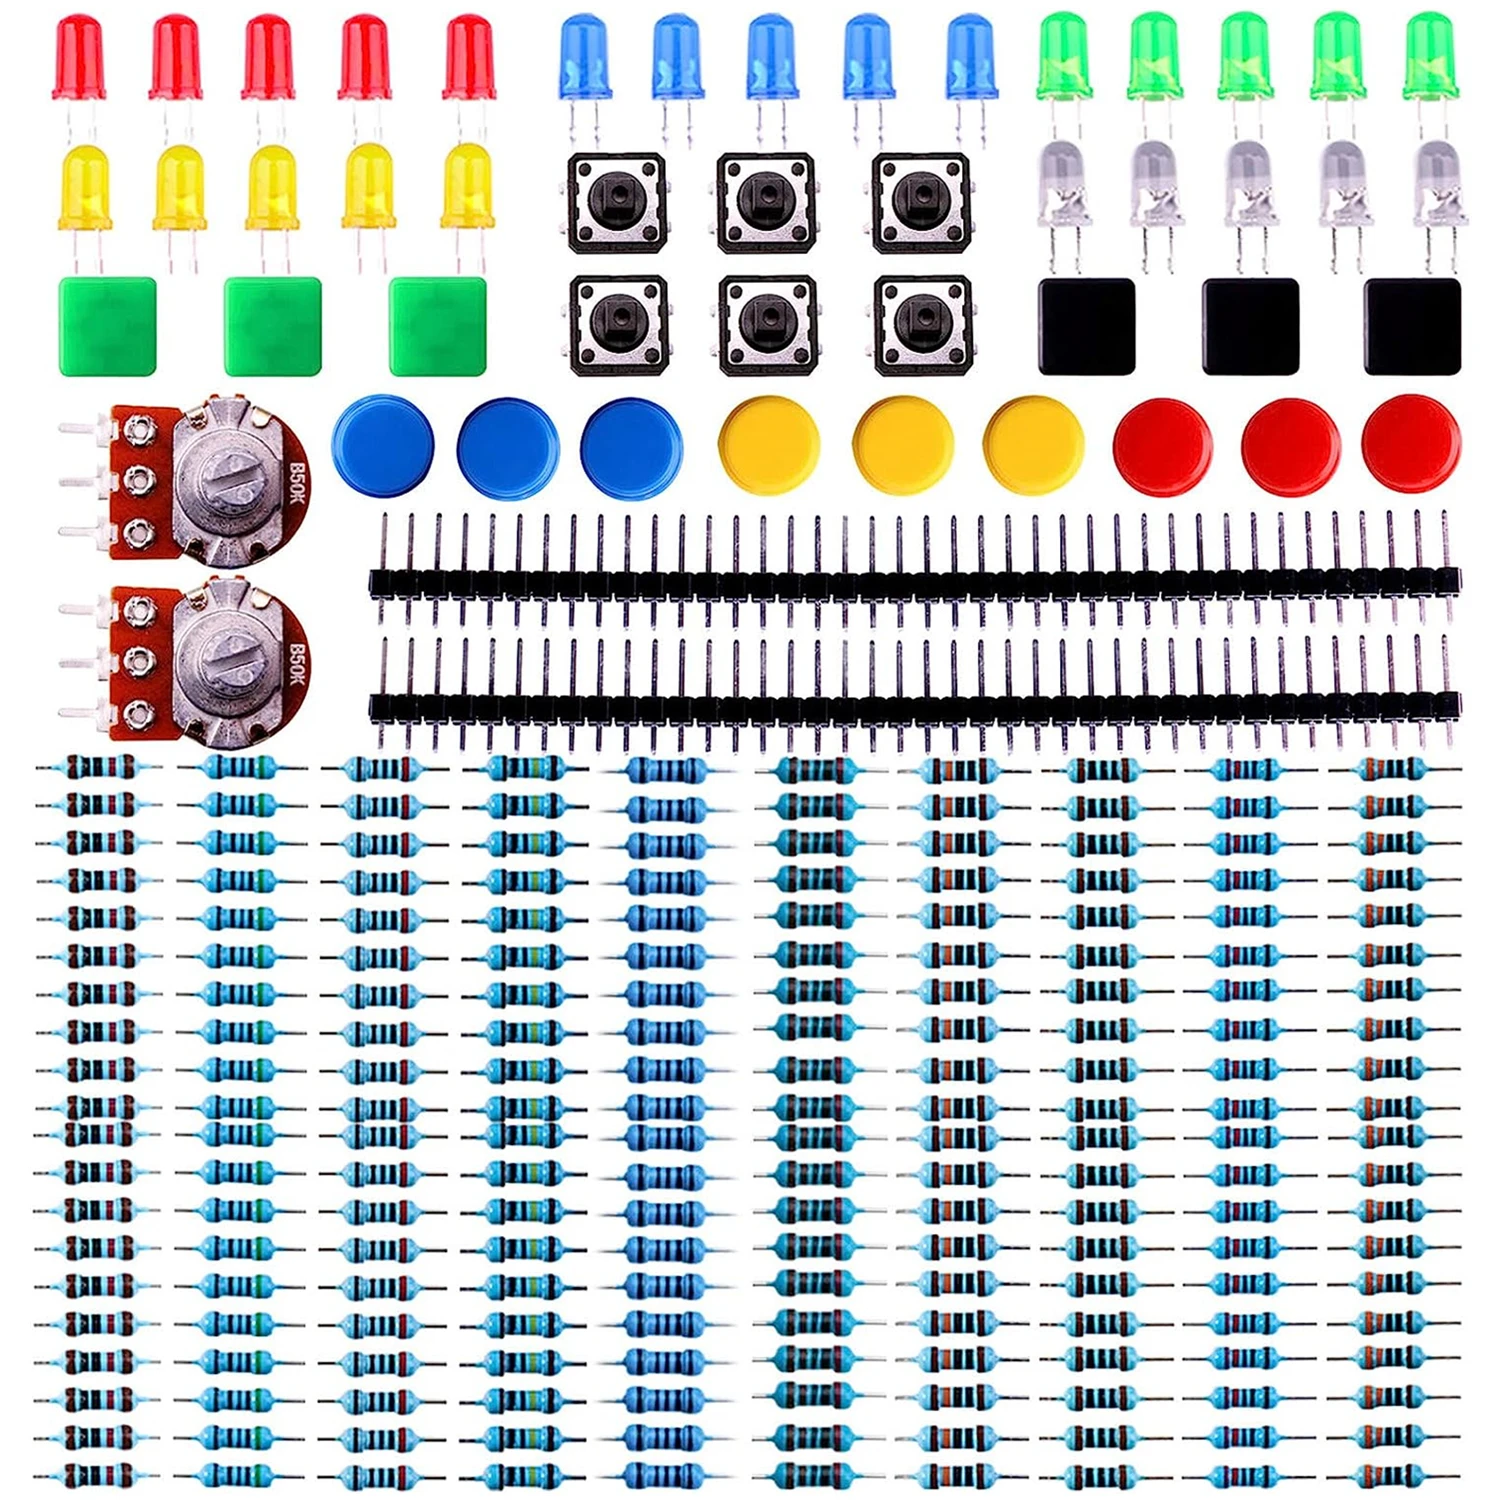 

Комплект Электронных компонентов ELEGOO, совместимый с Arduino UNO, MEGA, Raspberry Pi, с резисторами, светодиодами, переключателем, потенциометром